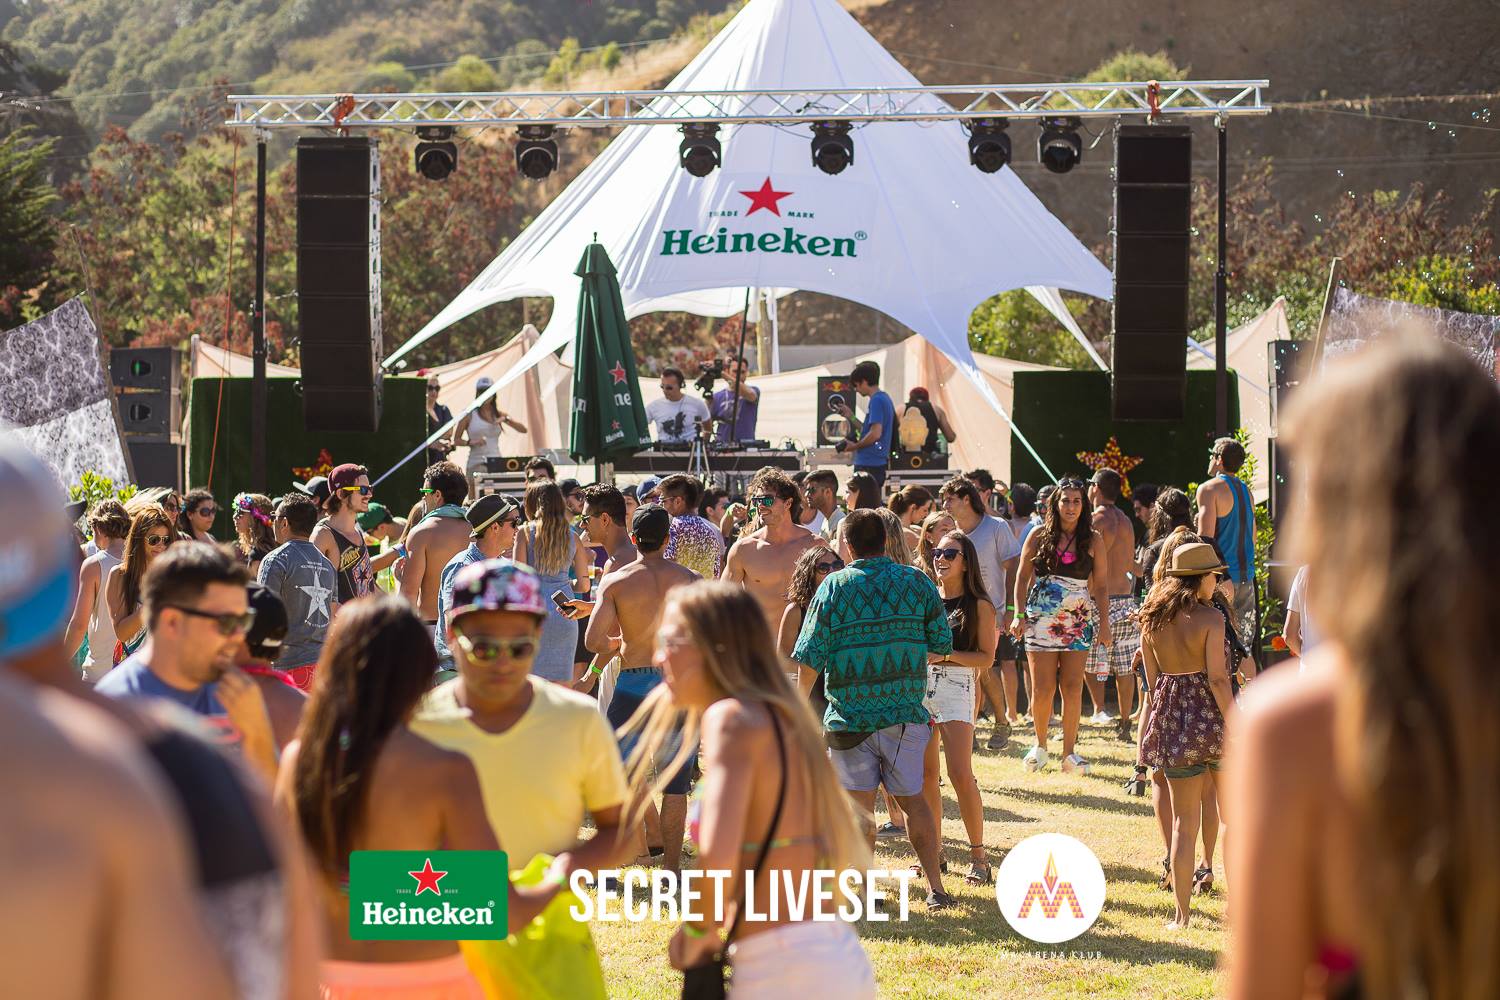 Gana entradas para el Secret LiveSet de Heineken, la fiesta secreta que cierra el verano 2015